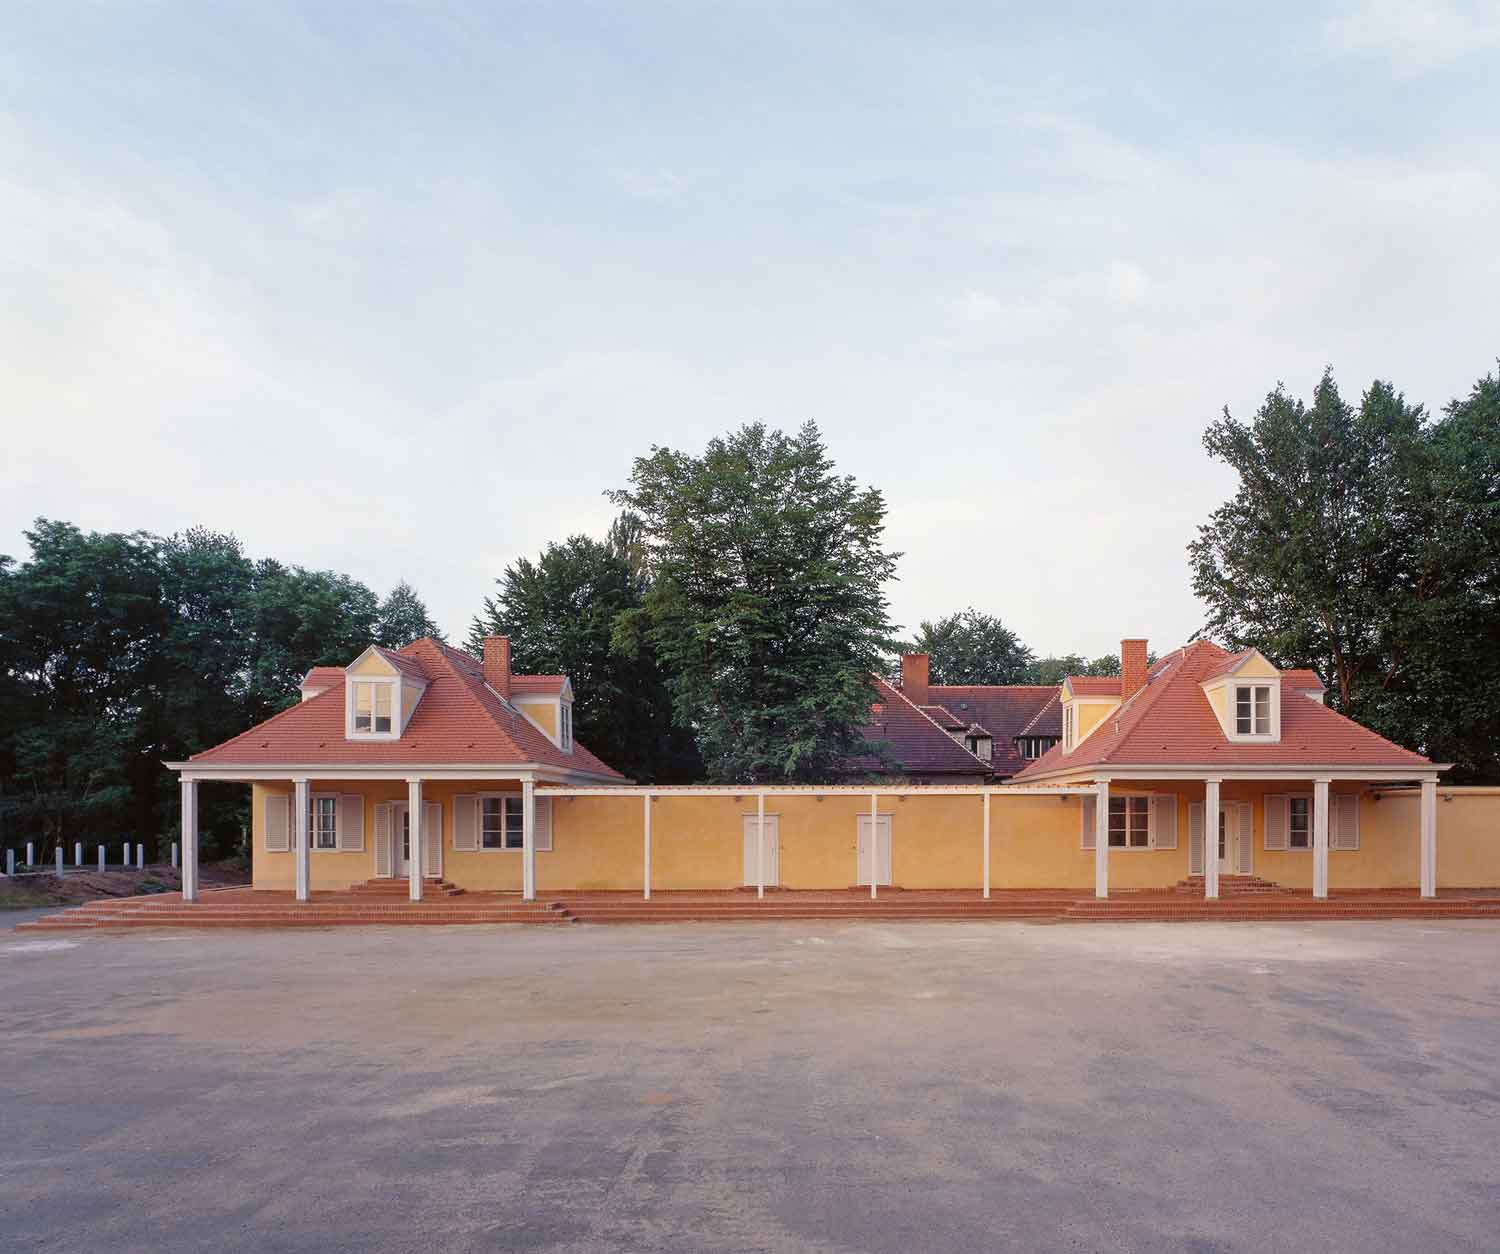 Foto, farbig: Frontalansicht der beiden kleinen, eingeschossigen Gebäude mit pyramidenförmigen Dächern, die durch einen Laubengang verbunden und gelb gestrichen sind.